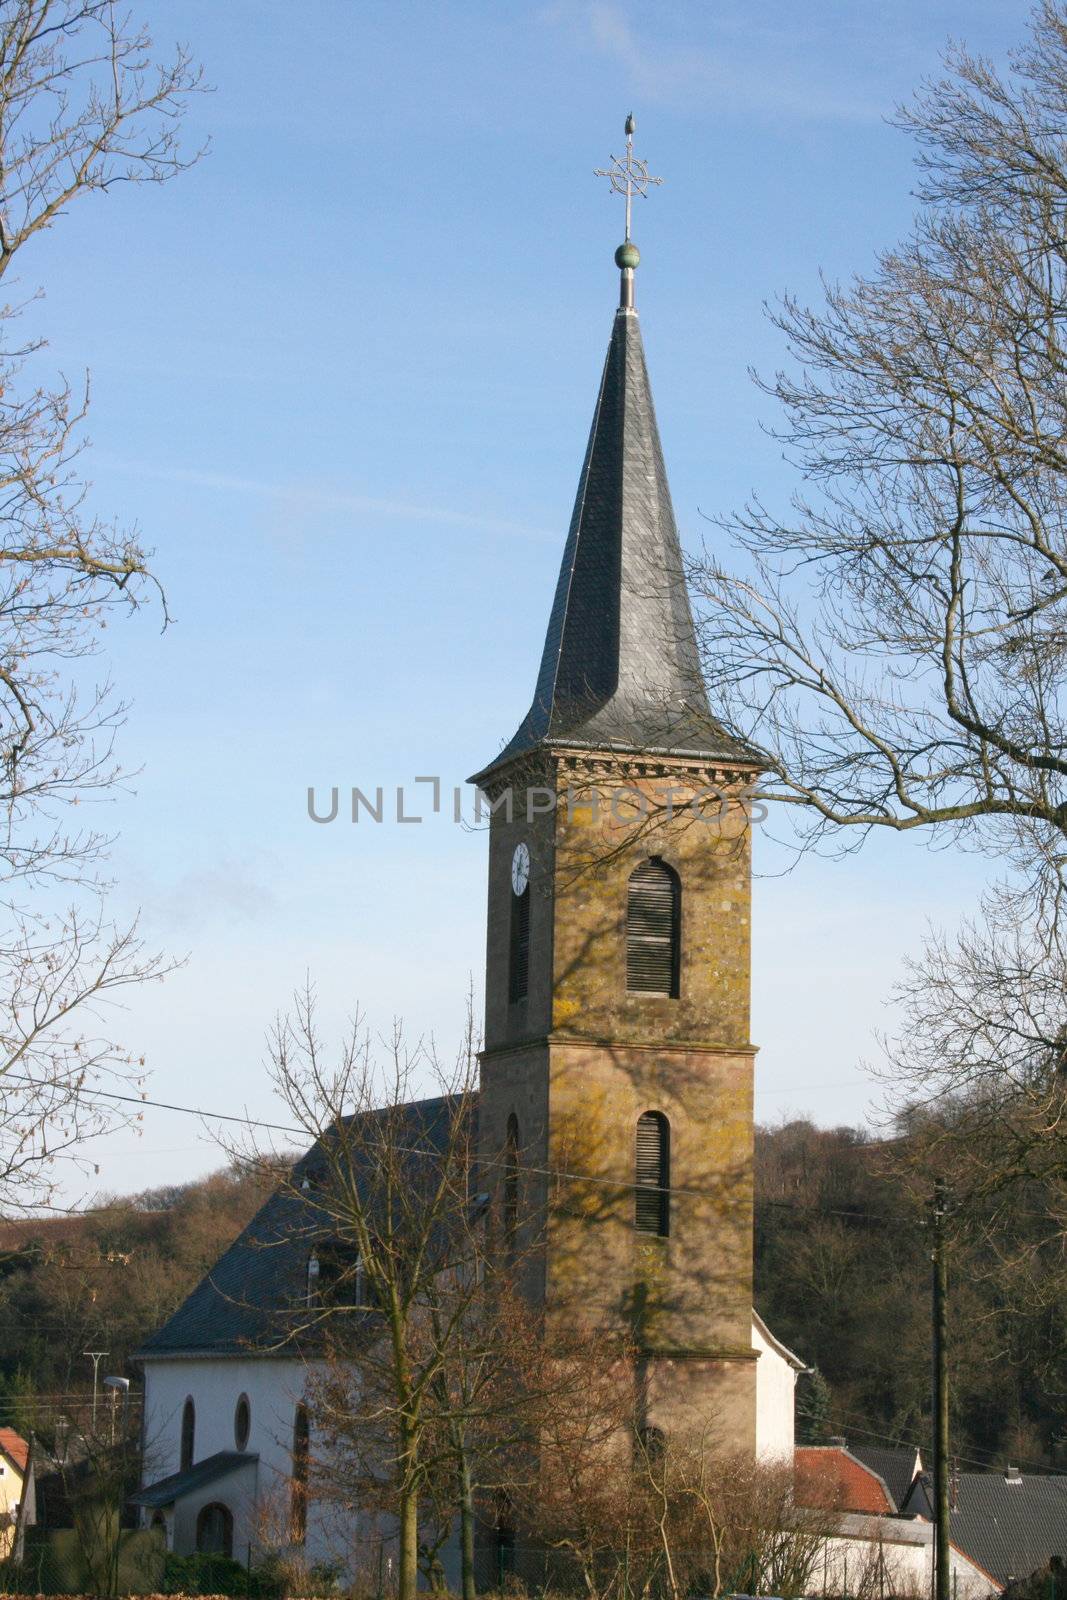 Ansicht der Dorfkirche in Berschweiler,Deutschland	
View of the village church in Berschweiler, Germany